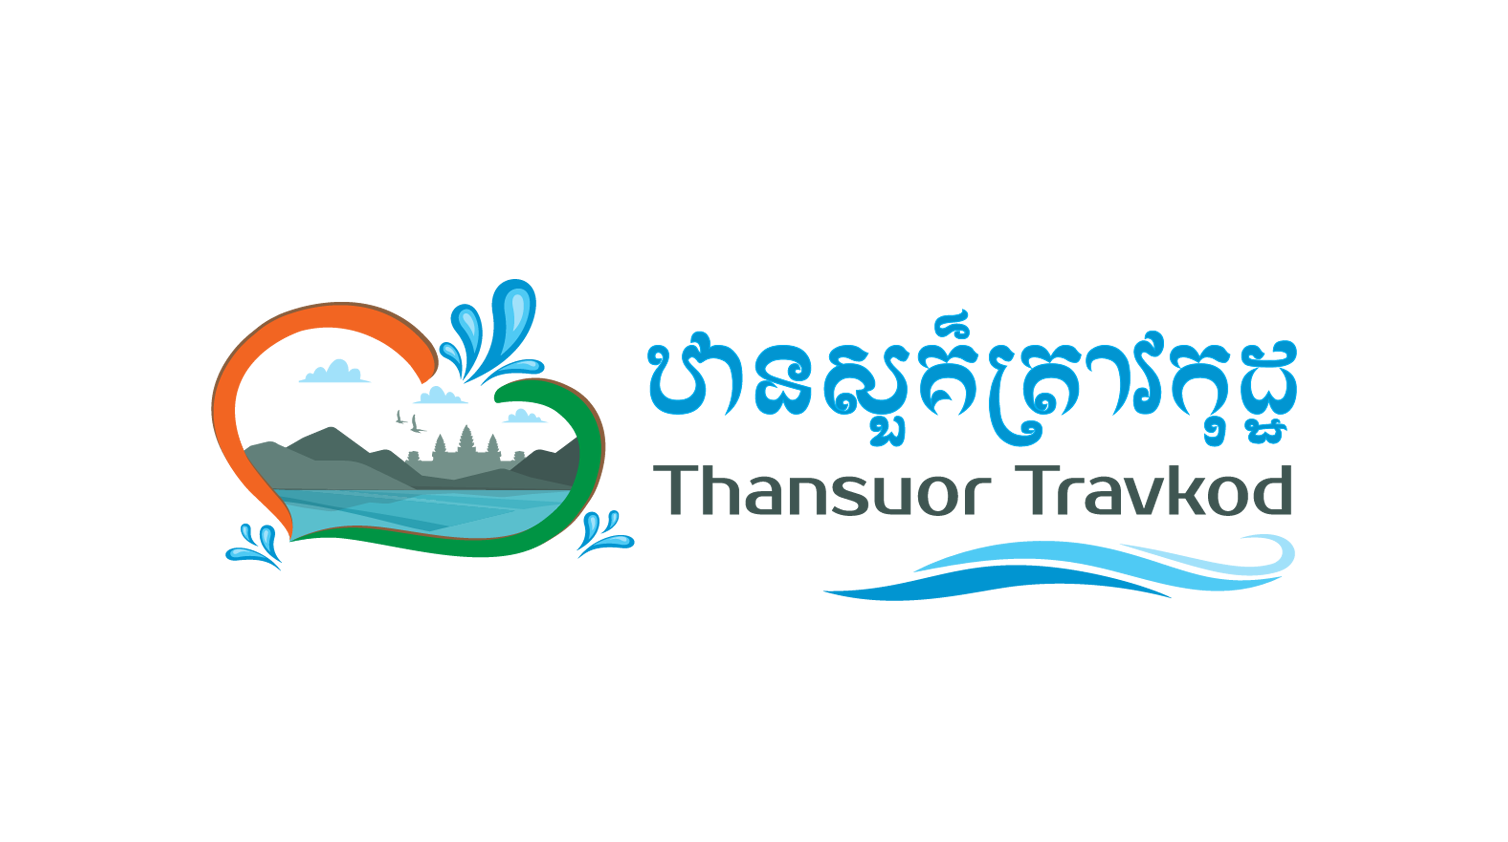 Thansour Travkod